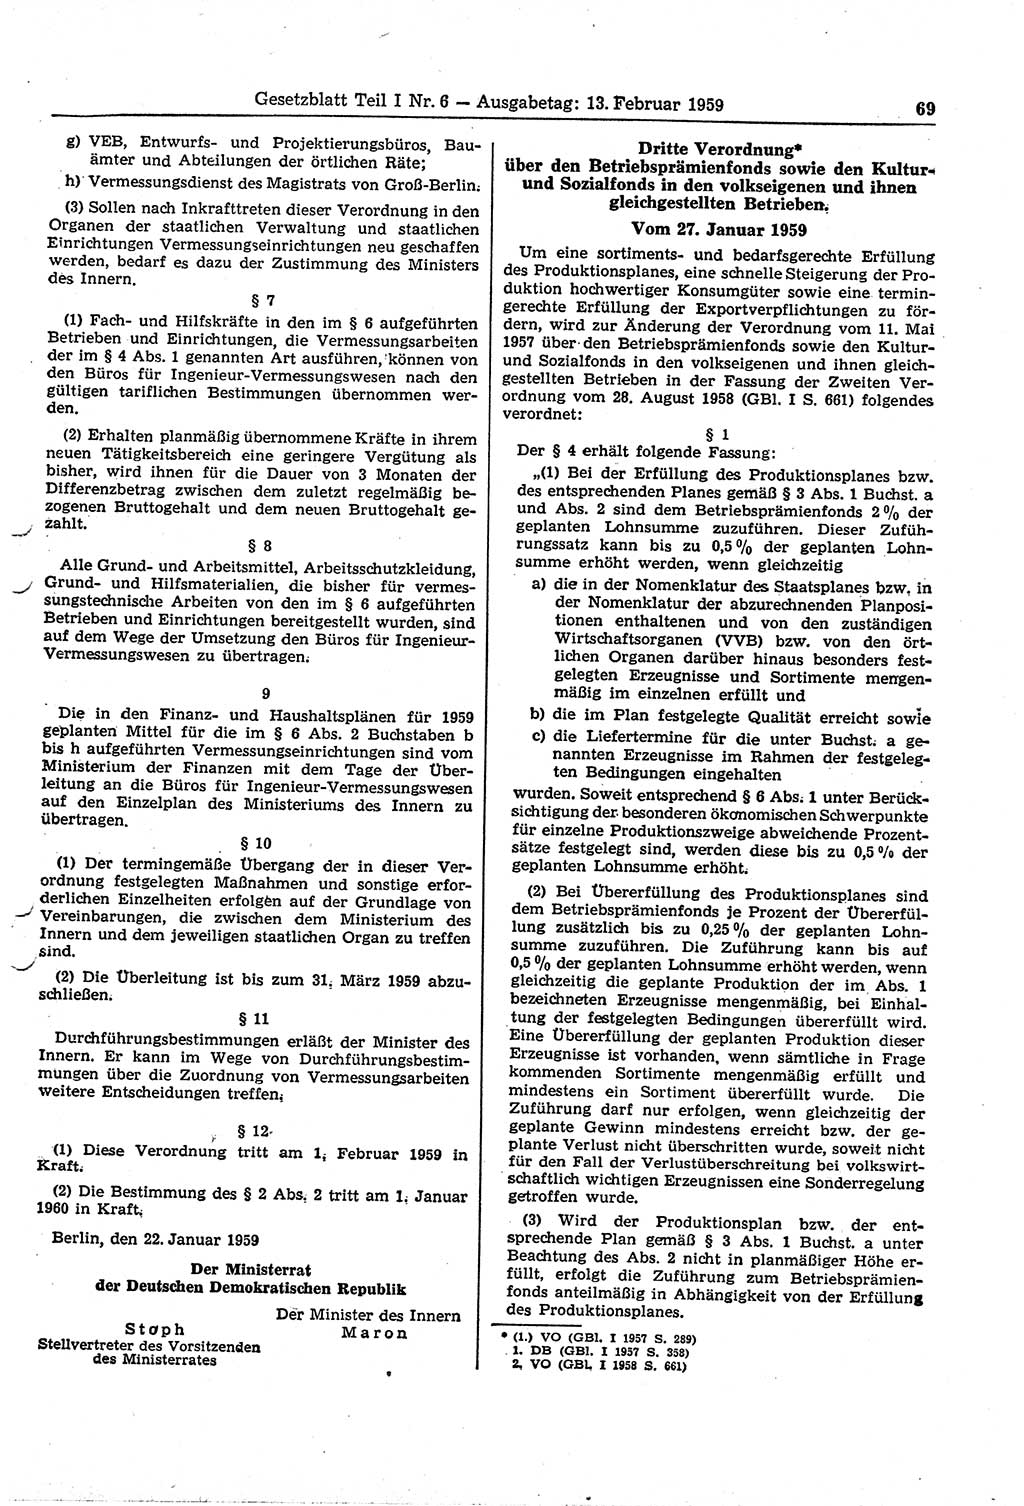 Gesetzblatt (GBl.) der Deutschen Demokratischen Republik (DDR) Teil Ⅰ 1959, Seite 69 (GBl. DDR Ⅰ 1959, S. 69)